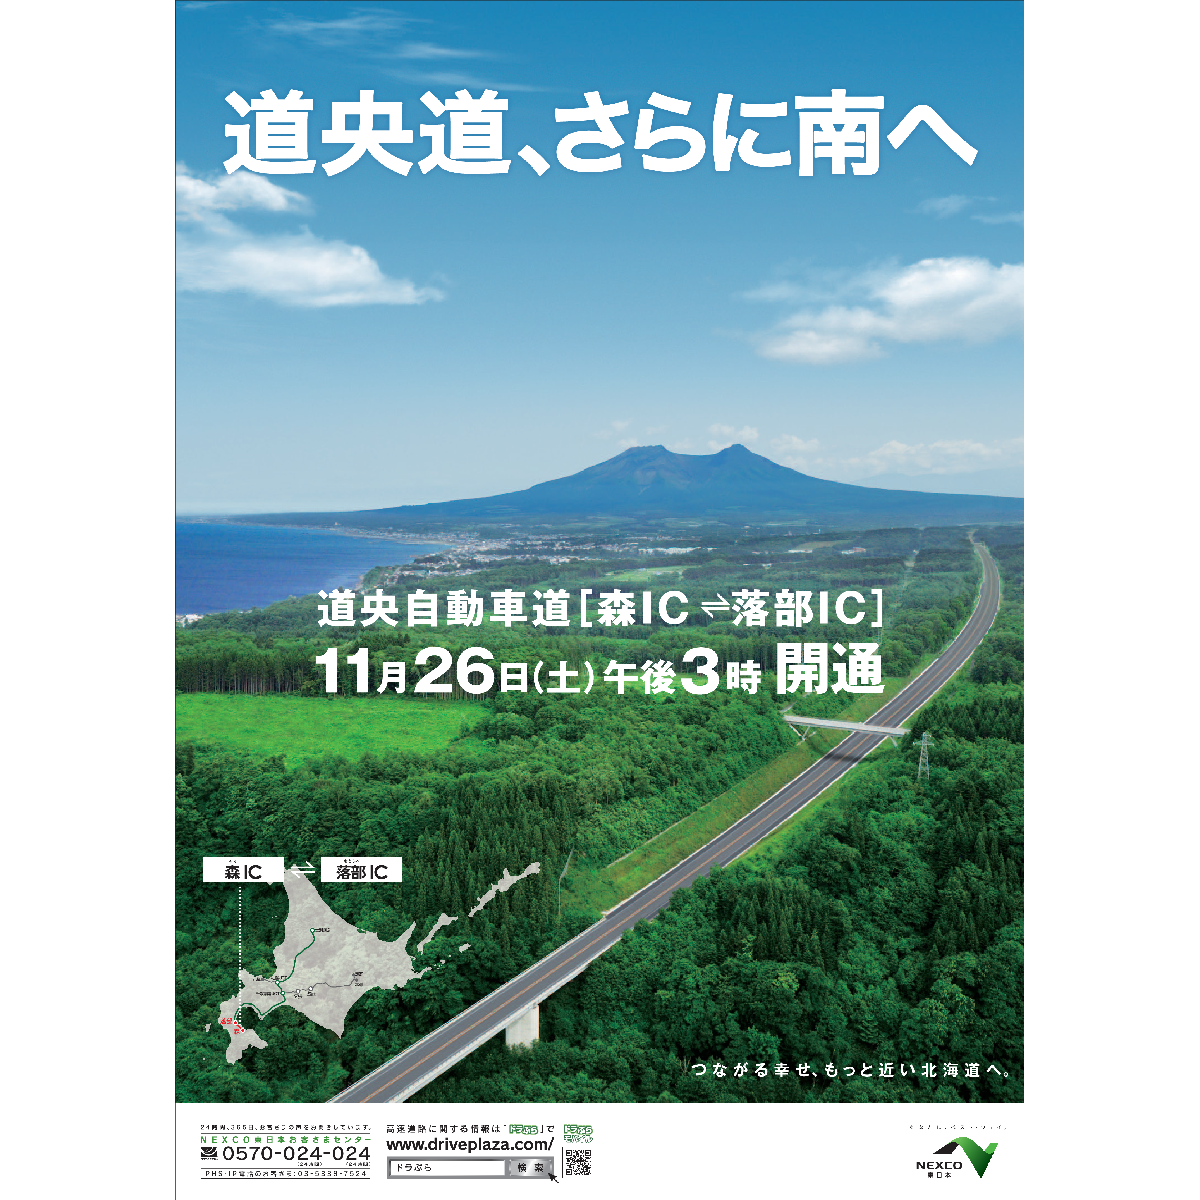 北海道内高速道路（道東道・道央道）の開通広報